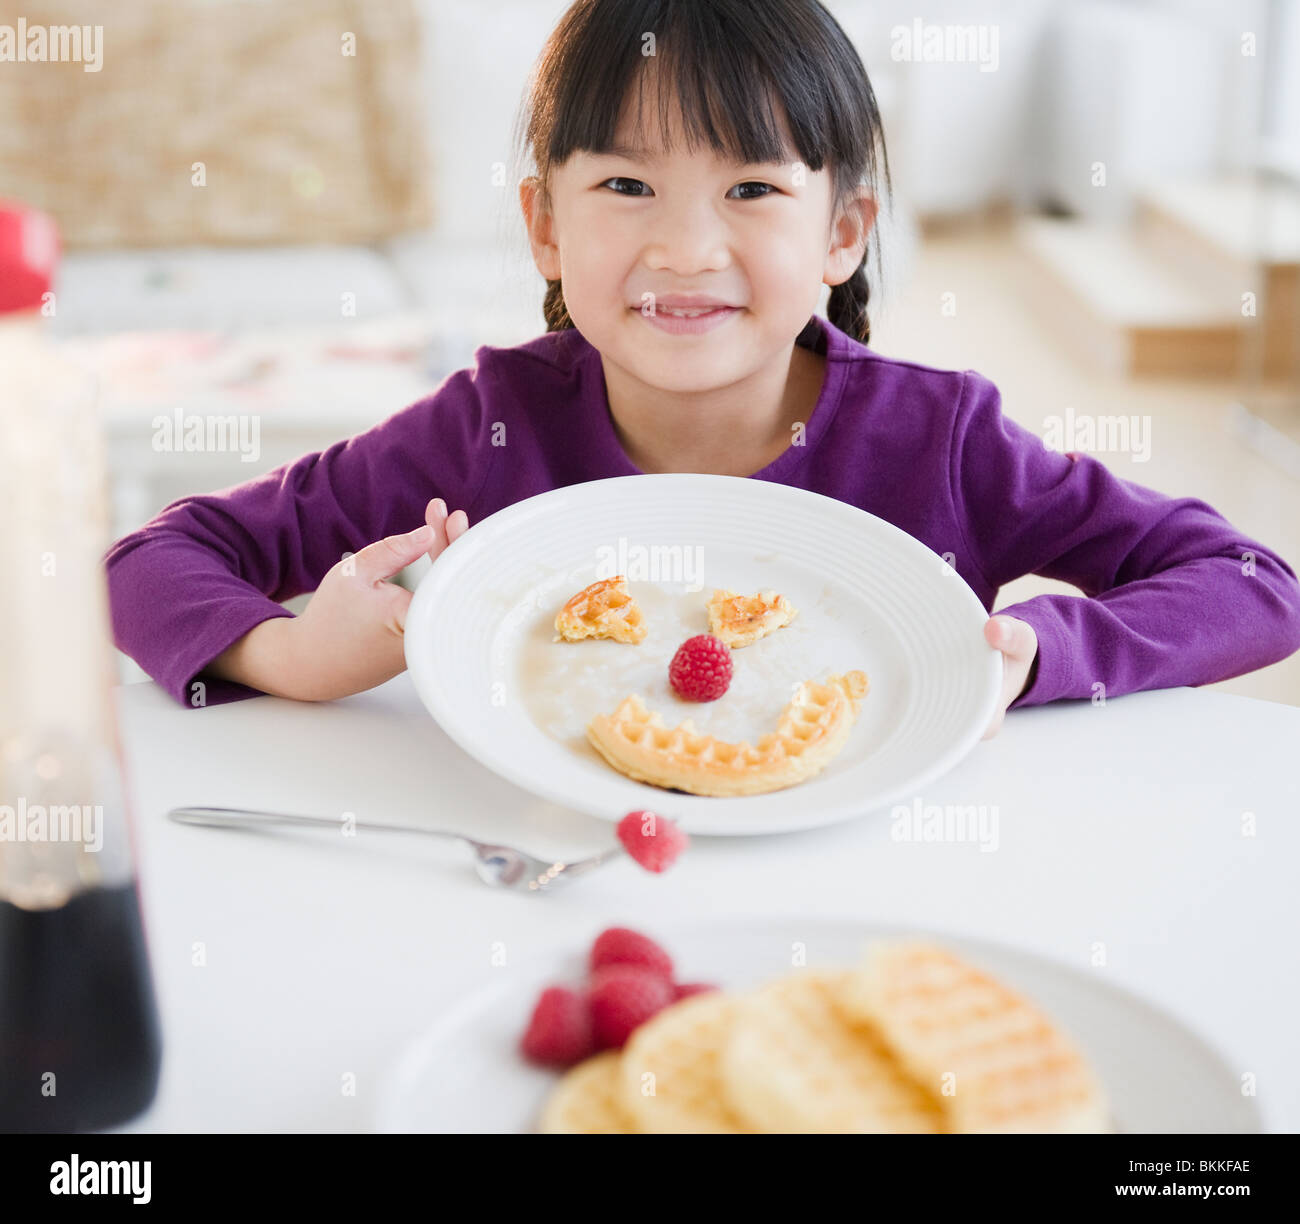 Chinesisches Mädchen Grimasse auf Teller mit Waffel Stockfoto